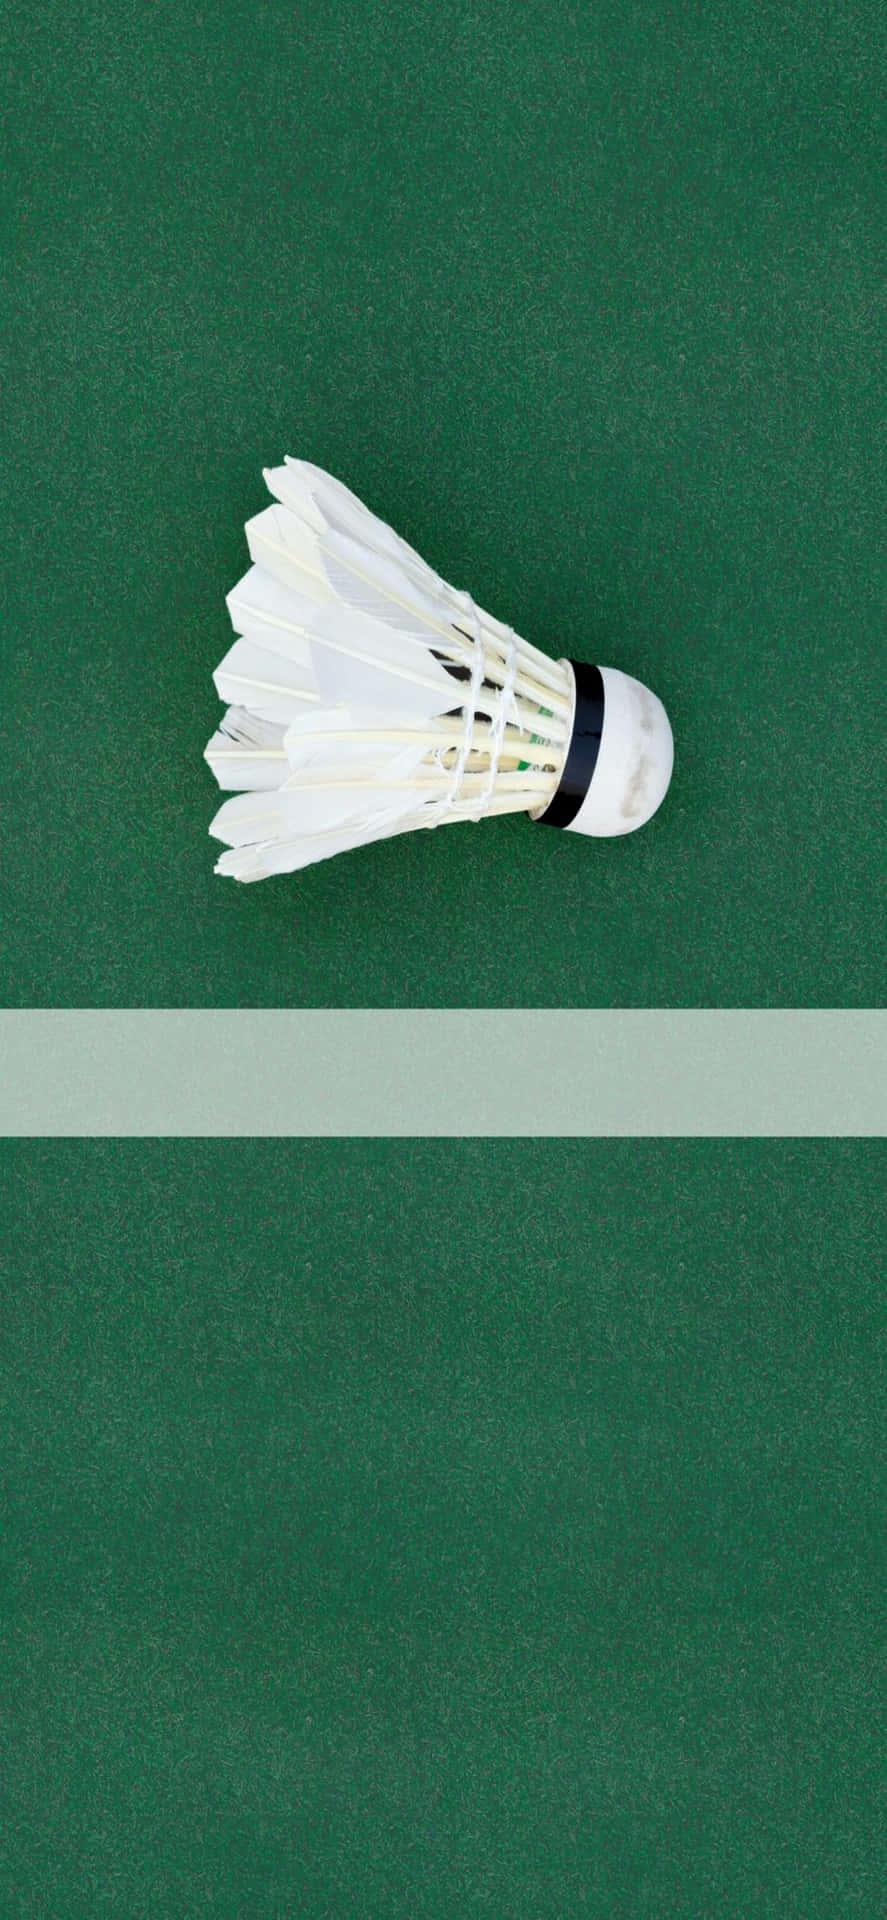 Portail Tuo Gioco Di Badminton Al Livello Successivo Con Iphone Xs Max